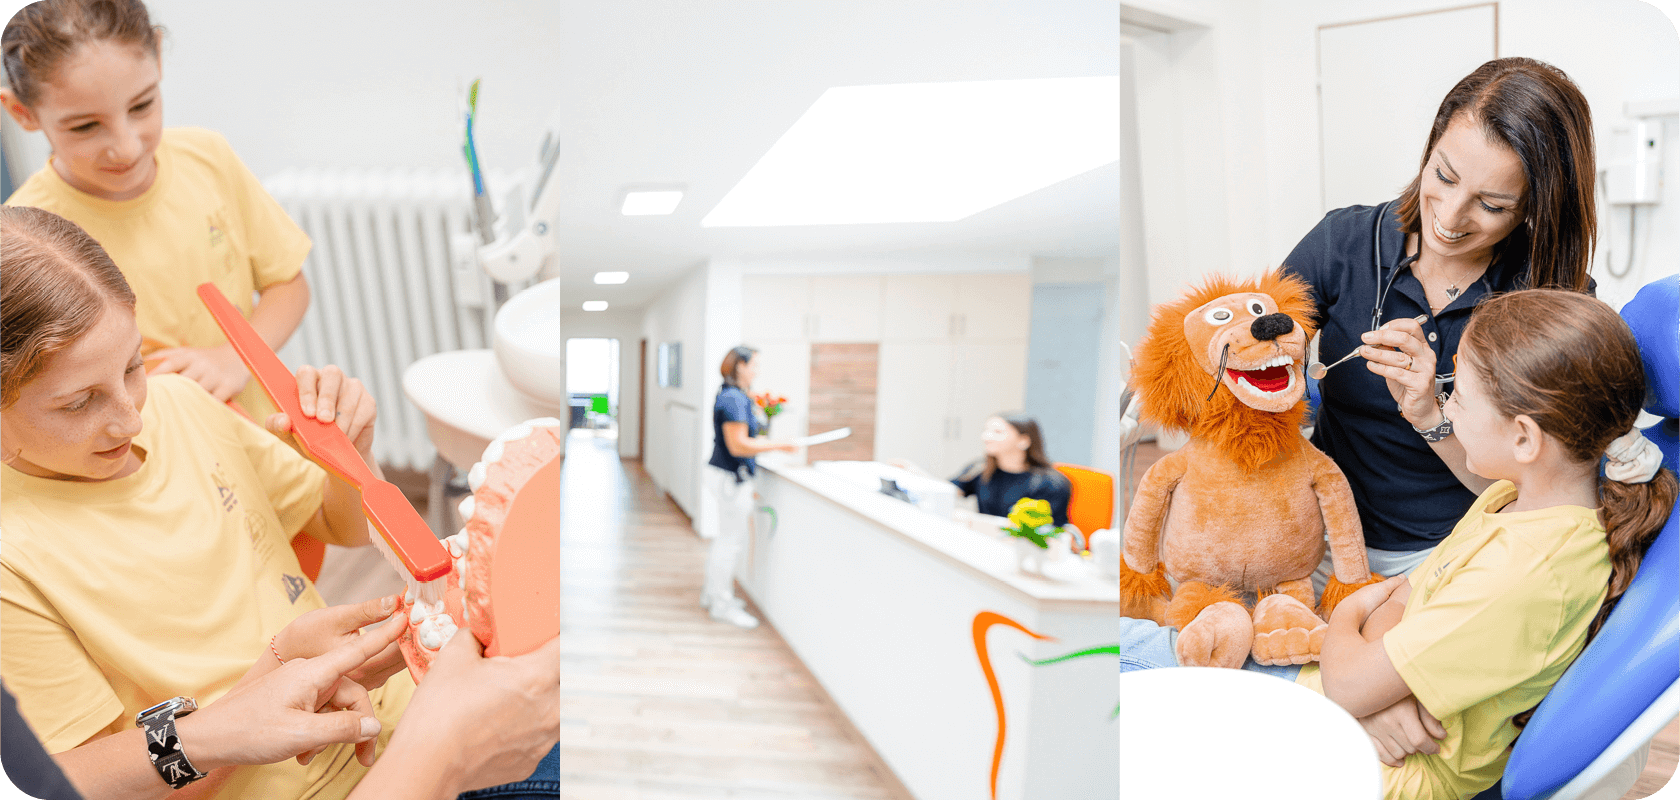 Ihr strahlendes Lächeln beginnt hier! Zahnarztpraxis Ilona George in Memmingen bietet schmerzfreie Behandlungen, ästhetische Lösungen und Aligner-Behandlungen. Vereinbaren Sie noch heute einen Termin und entdecken Sie, wie wir Ihr Lächeln zum Strahlen bringen können.